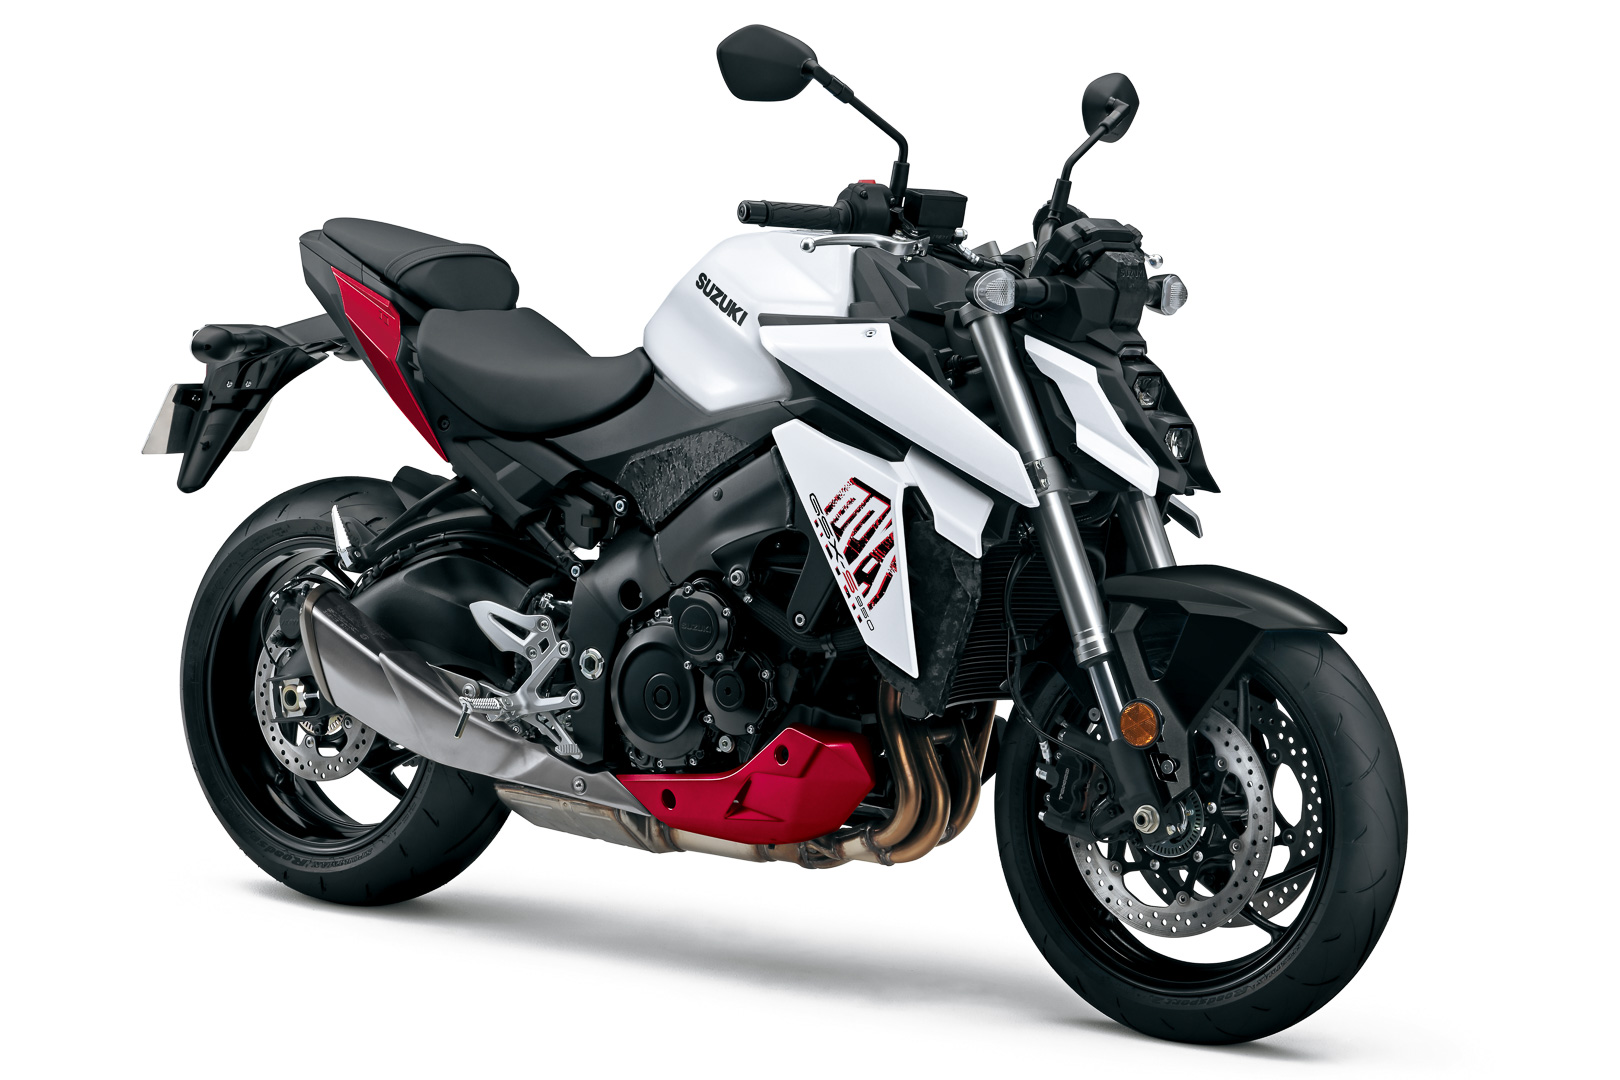 2022 suzuki gsx s950 first look sport motorcycle 6